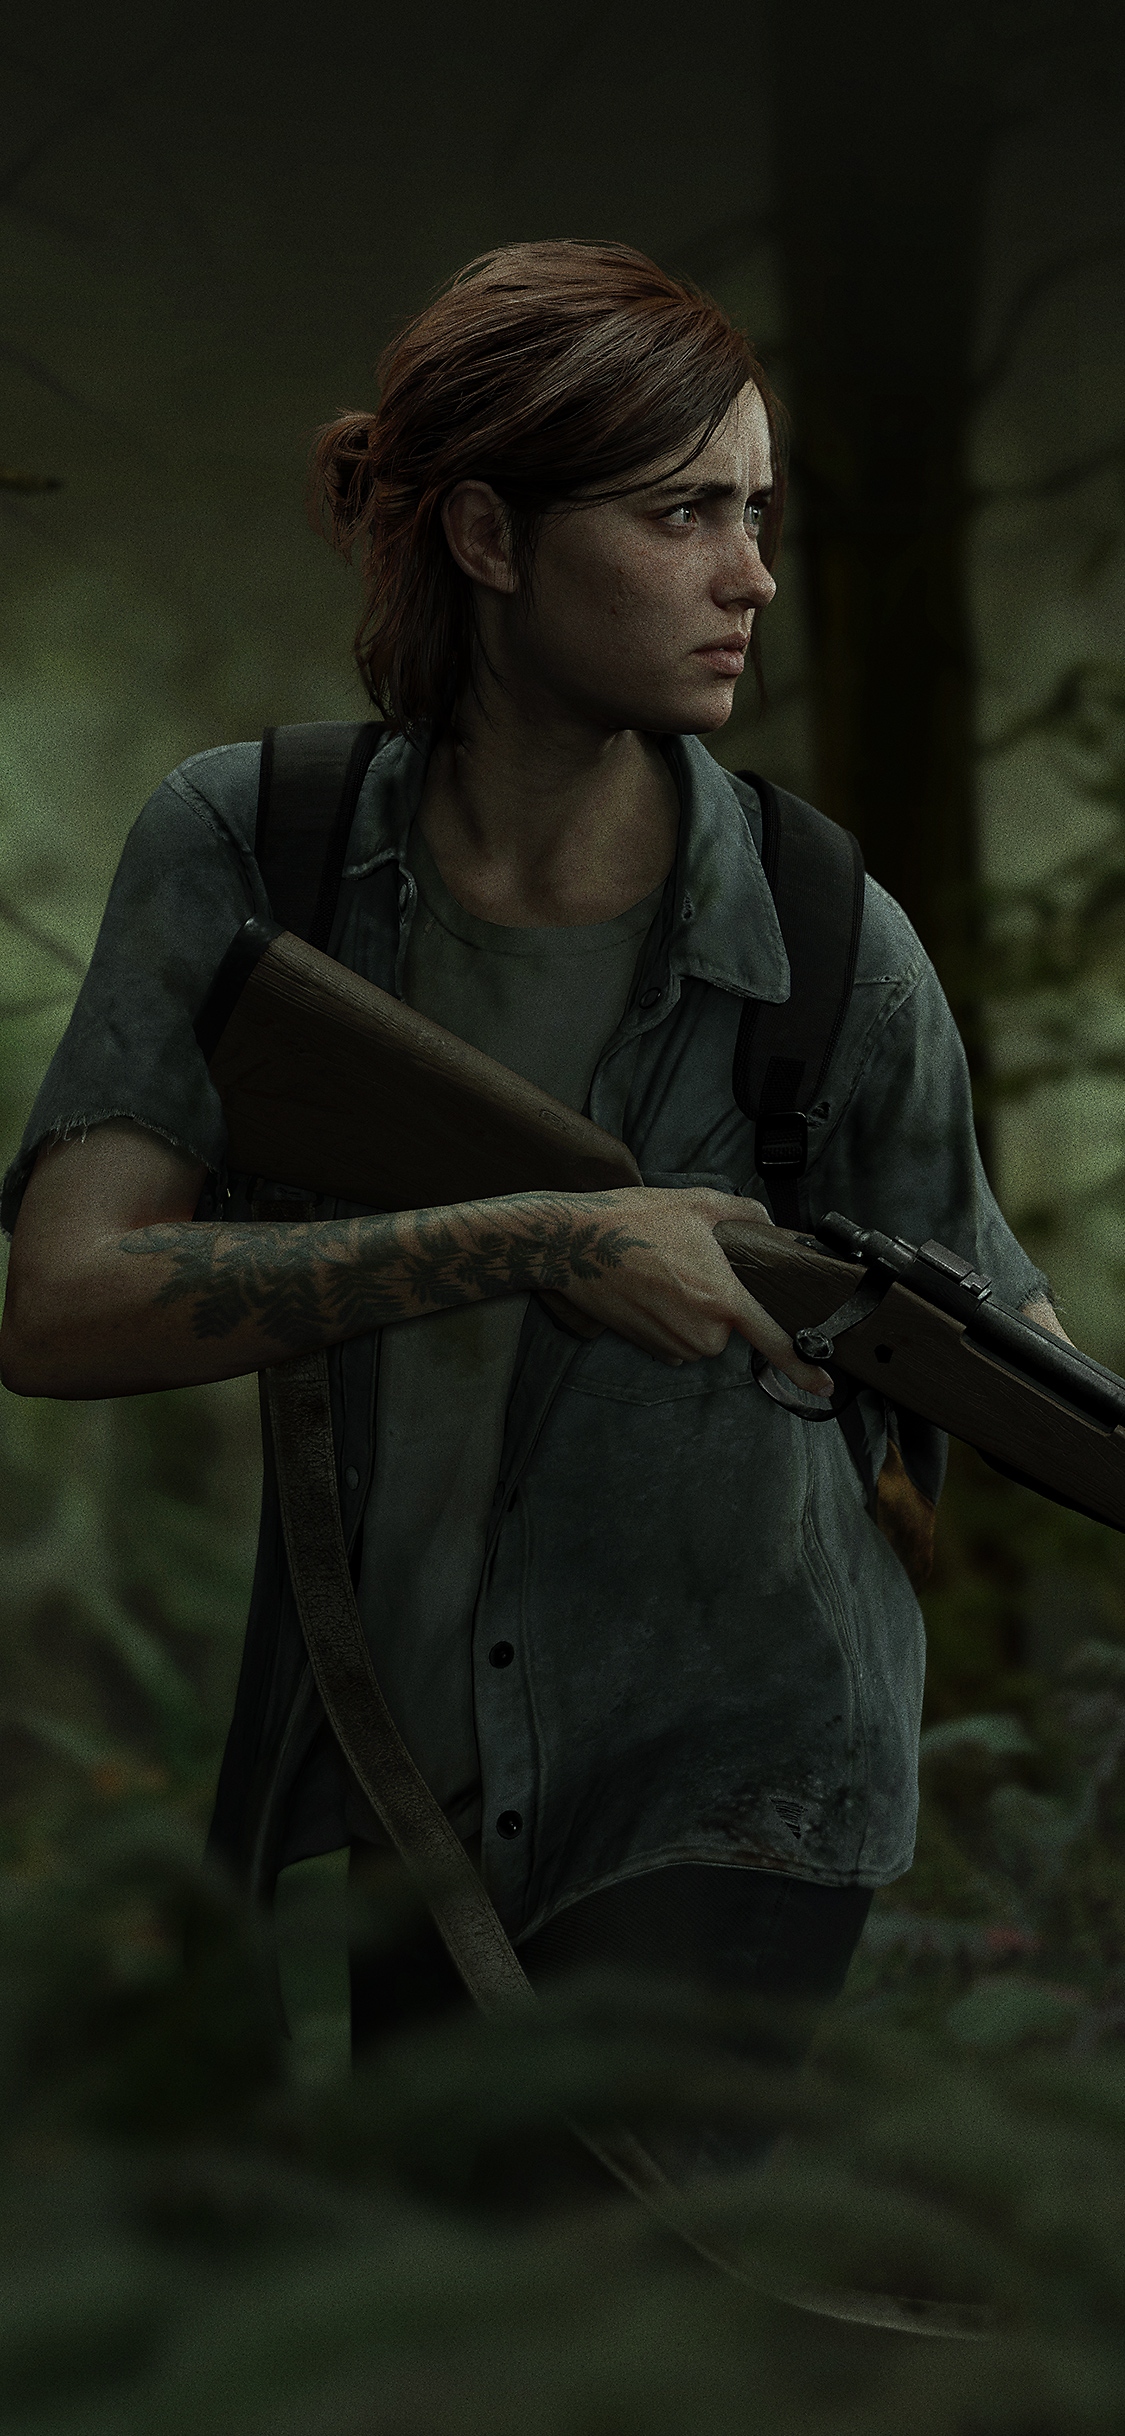 The Last of Us Part II Μέρα της Επιδημίας 2018 - iPhone X